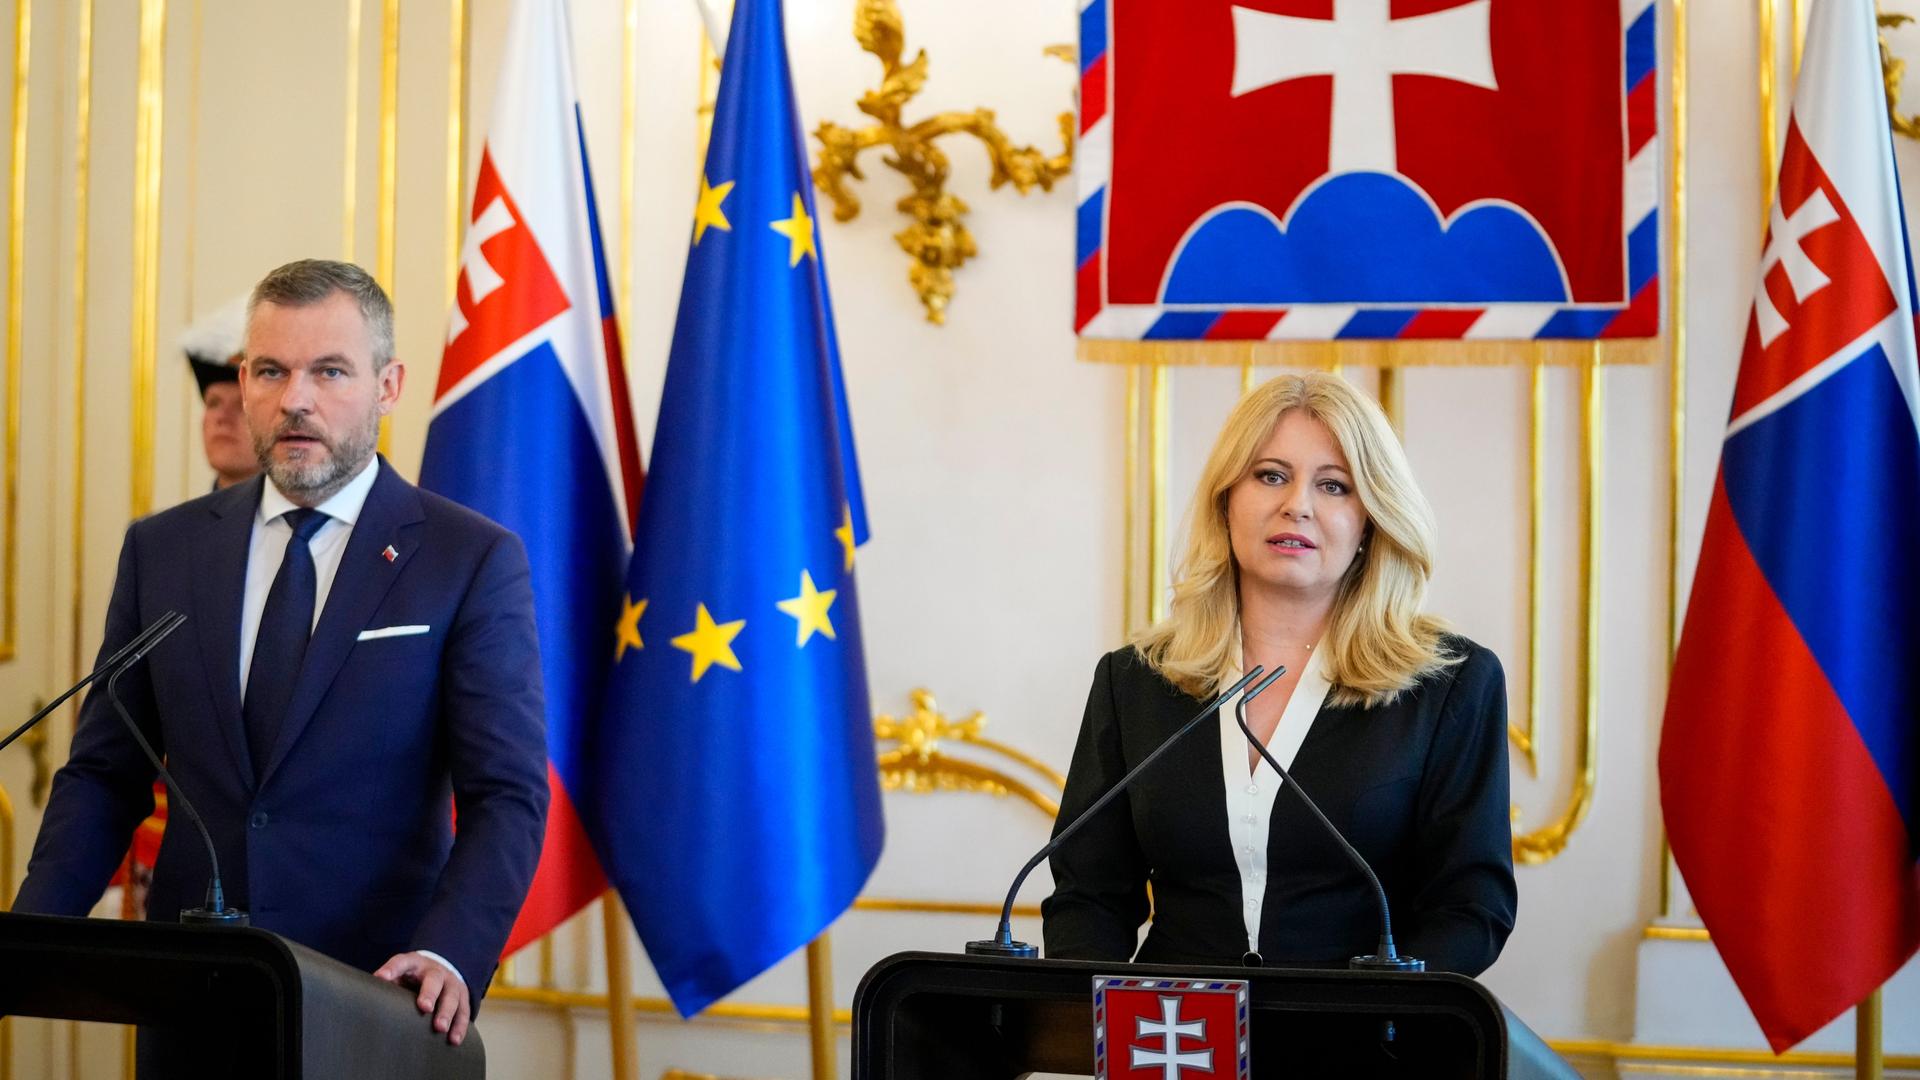 Slowakei, Bratislava: Die amtierende Präsidentin Zuzana Caputova (r) und der designierte Präsident Peter Pellegrini geben im Präsidentenpalast eine gemeinsame Presseerklärung ab.